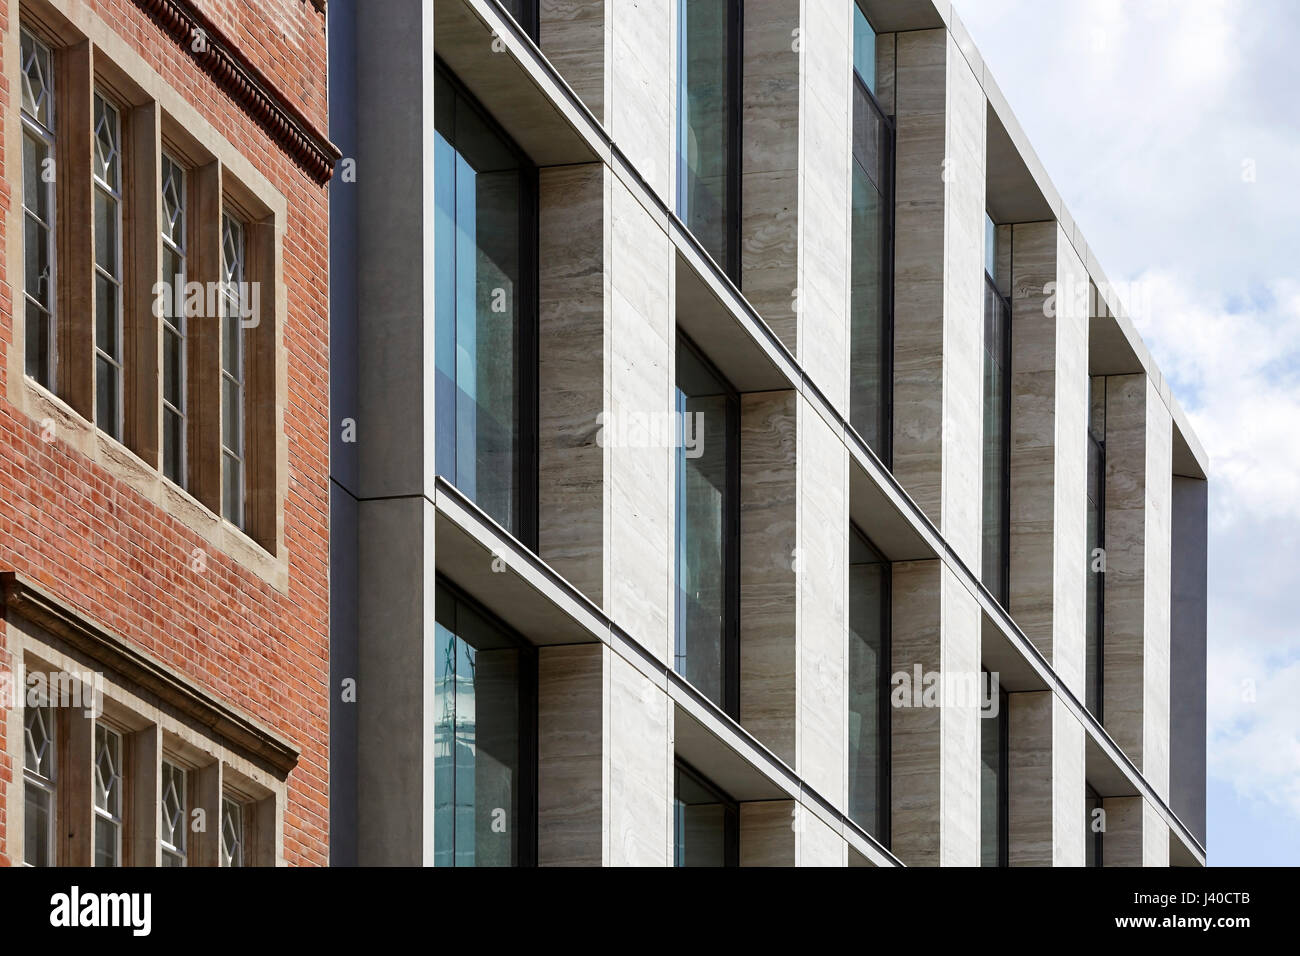 Fassade nebeneinander. Chancery Lane, London, Vereinigtes Königreich. Architekt: Bennetts Associates Architects, 2015. Stockfoto